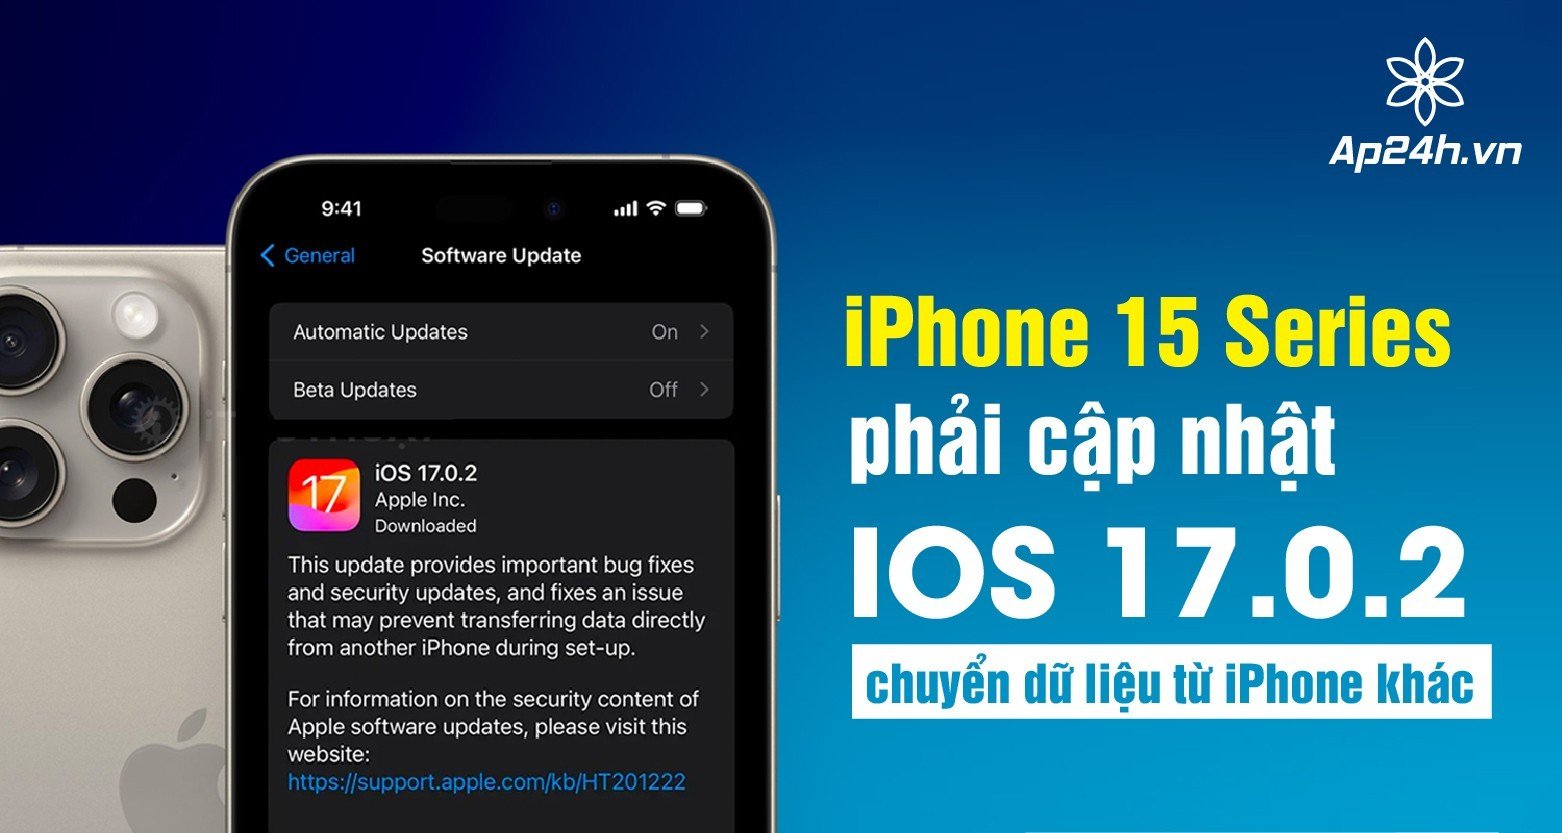  iPhone 15 Series phải cập nhật iOS 17.0.2 chuyển dữ liệu từ iPhone khác